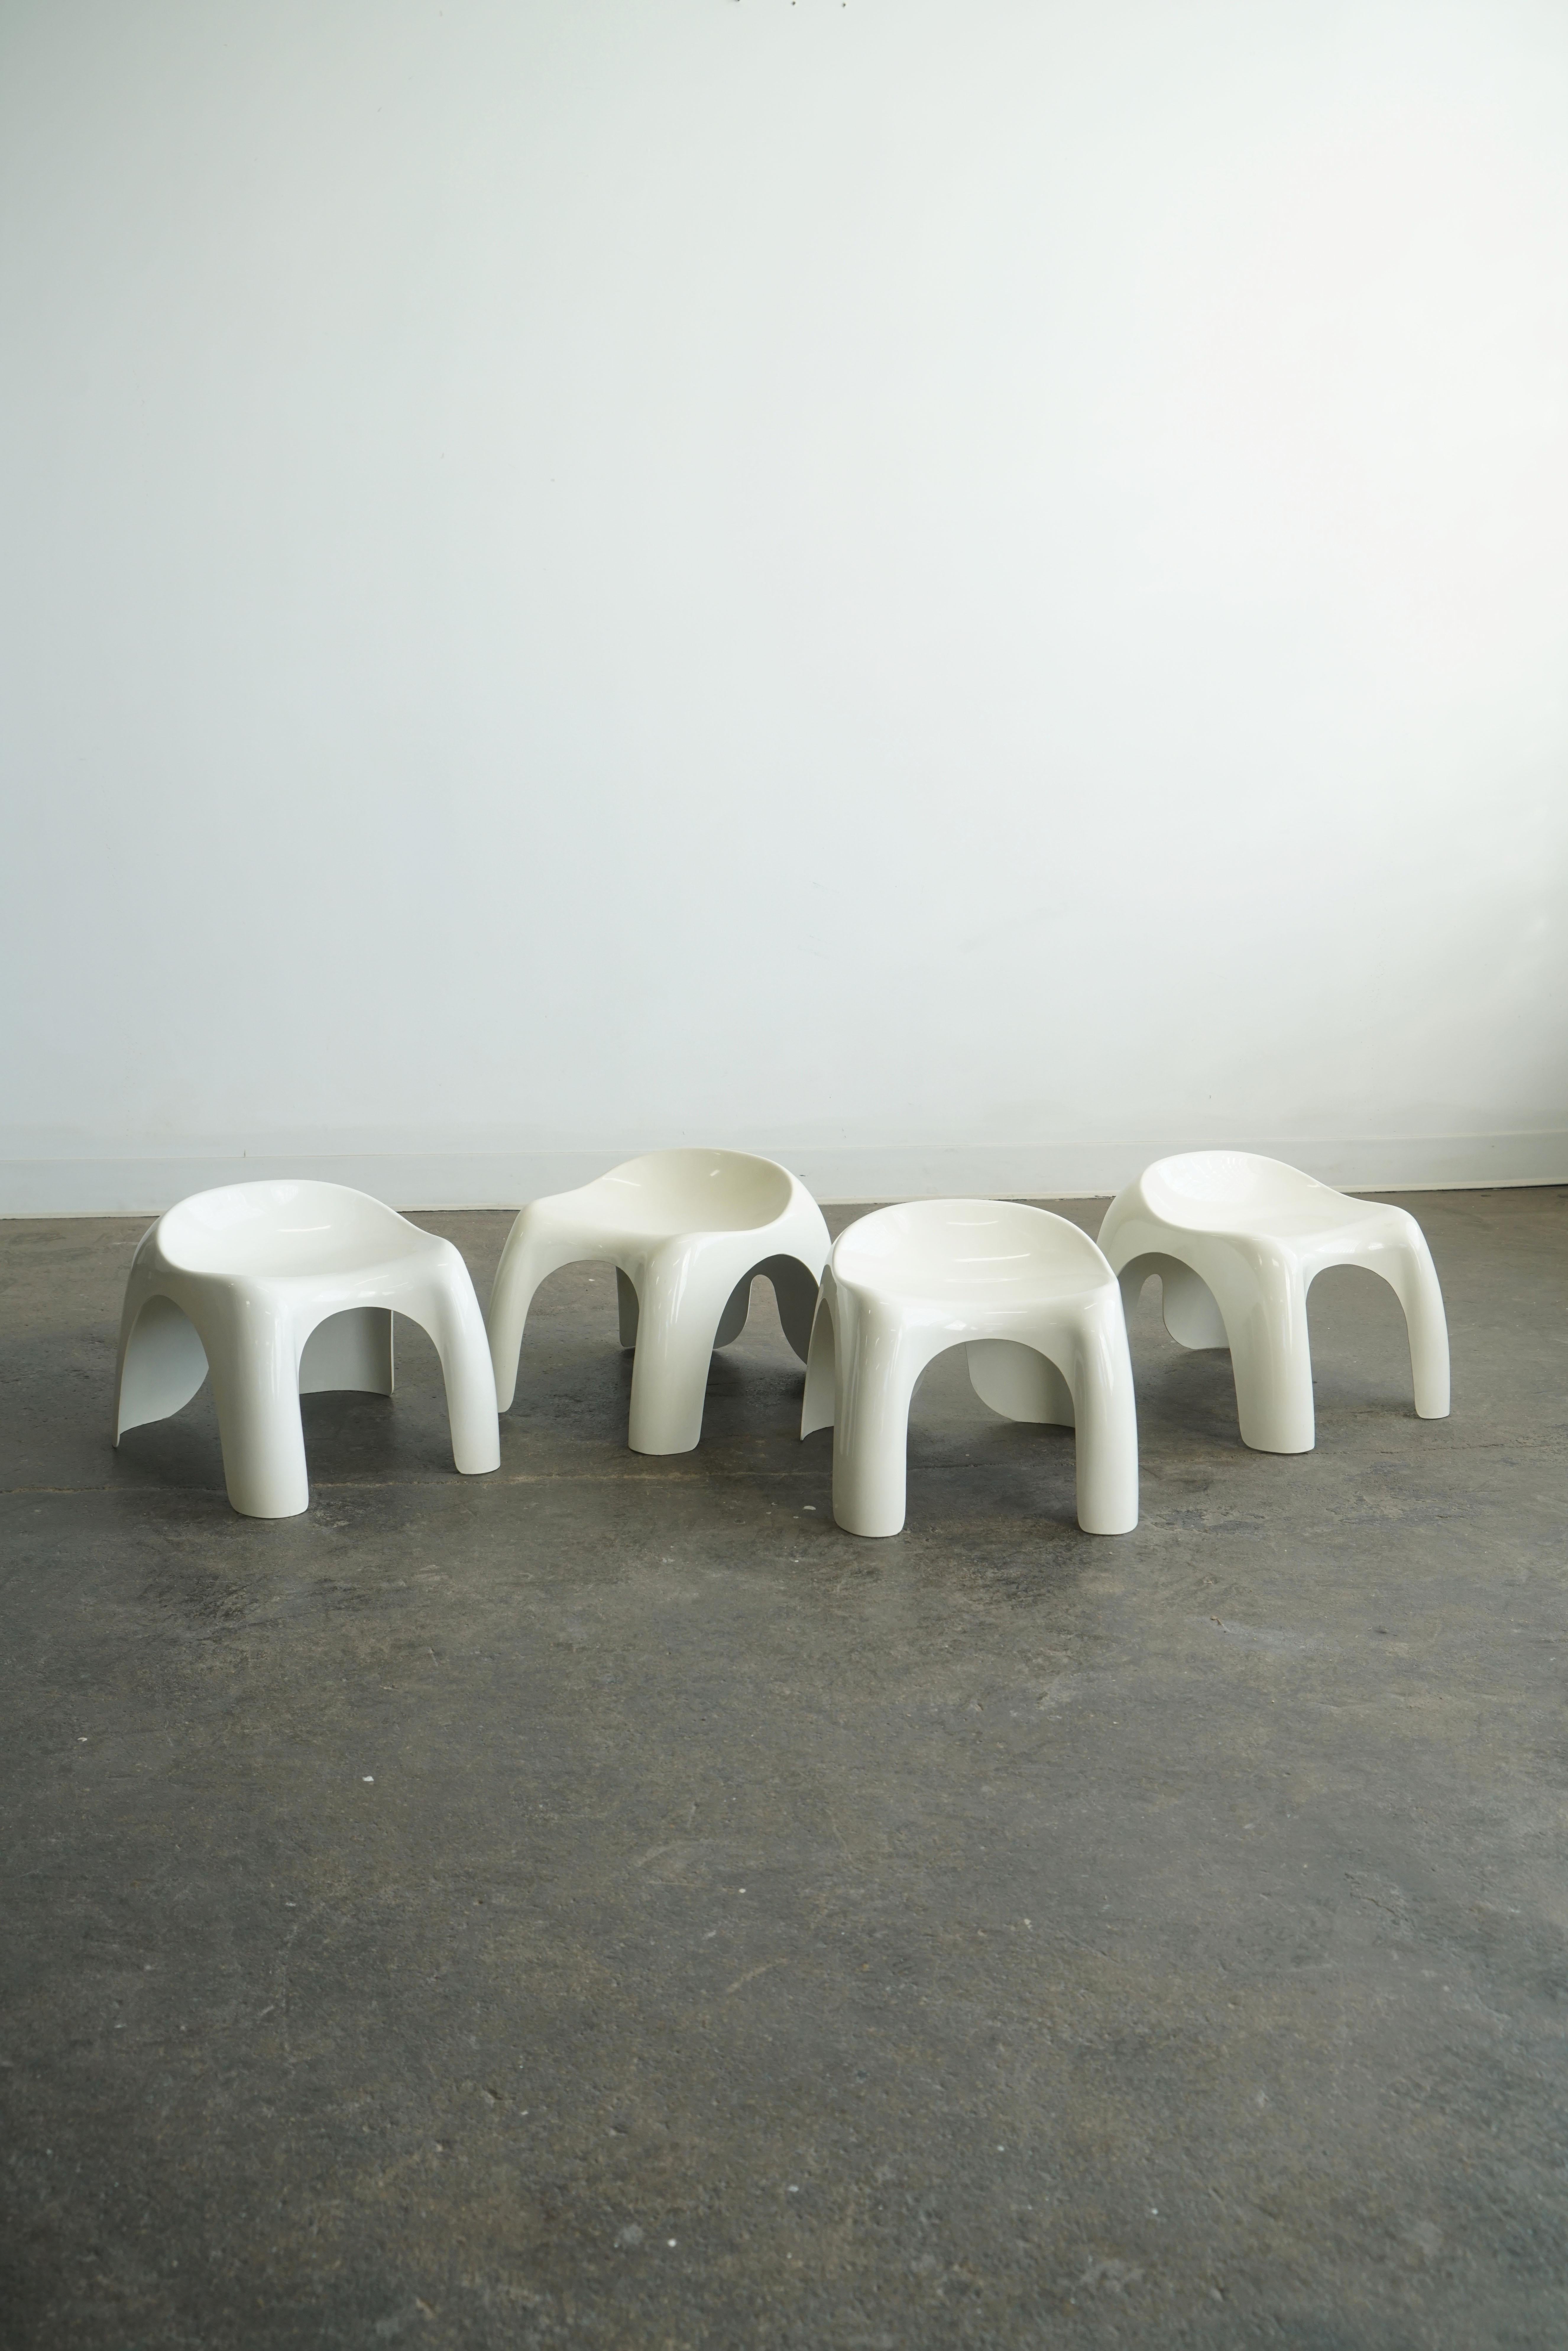 Efebo Seats, entworfen von Stacy Duke für Artemide.
Italien, 1960er Jahre
Goldenes Plastik. 
Individuelle Preisgestaltung. Vier verfügbar. 

Diese skulpturalen weißen Kunststoffhocker wurden als Kinderhocker entworfen, sind aber auch für Erwachsene